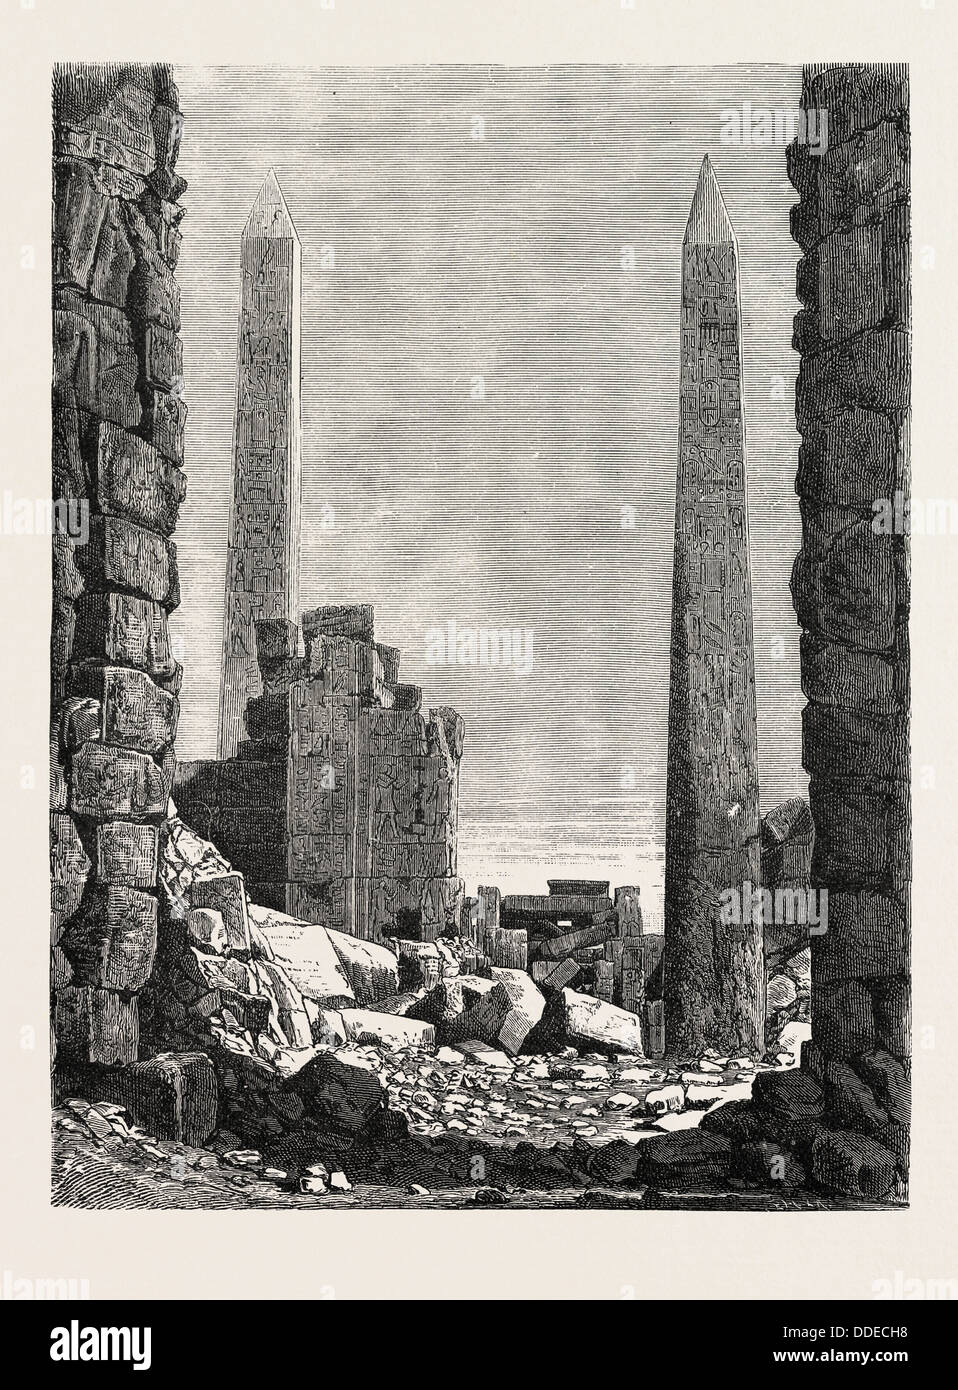 Les obélisques DANS LA PARTIE LA PLUS ANCIENNE de Karnak. L'Égypte, gravure 1879 Banque D'Images